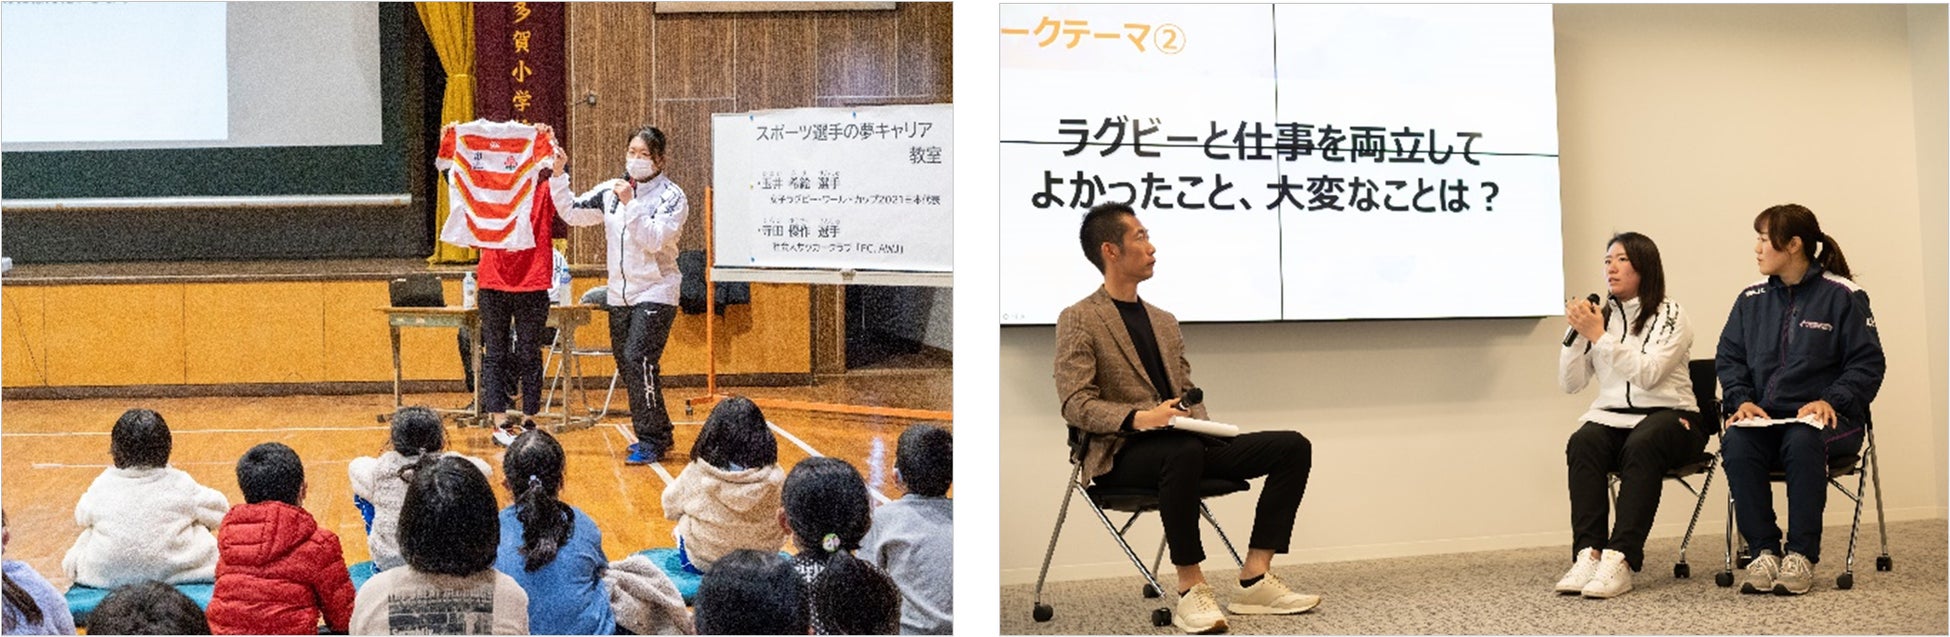 日本初、メジャーリーガー仕様のバットスイング計測システムが登場「HITTER’S HOUSE TOKYO」グランドオープン